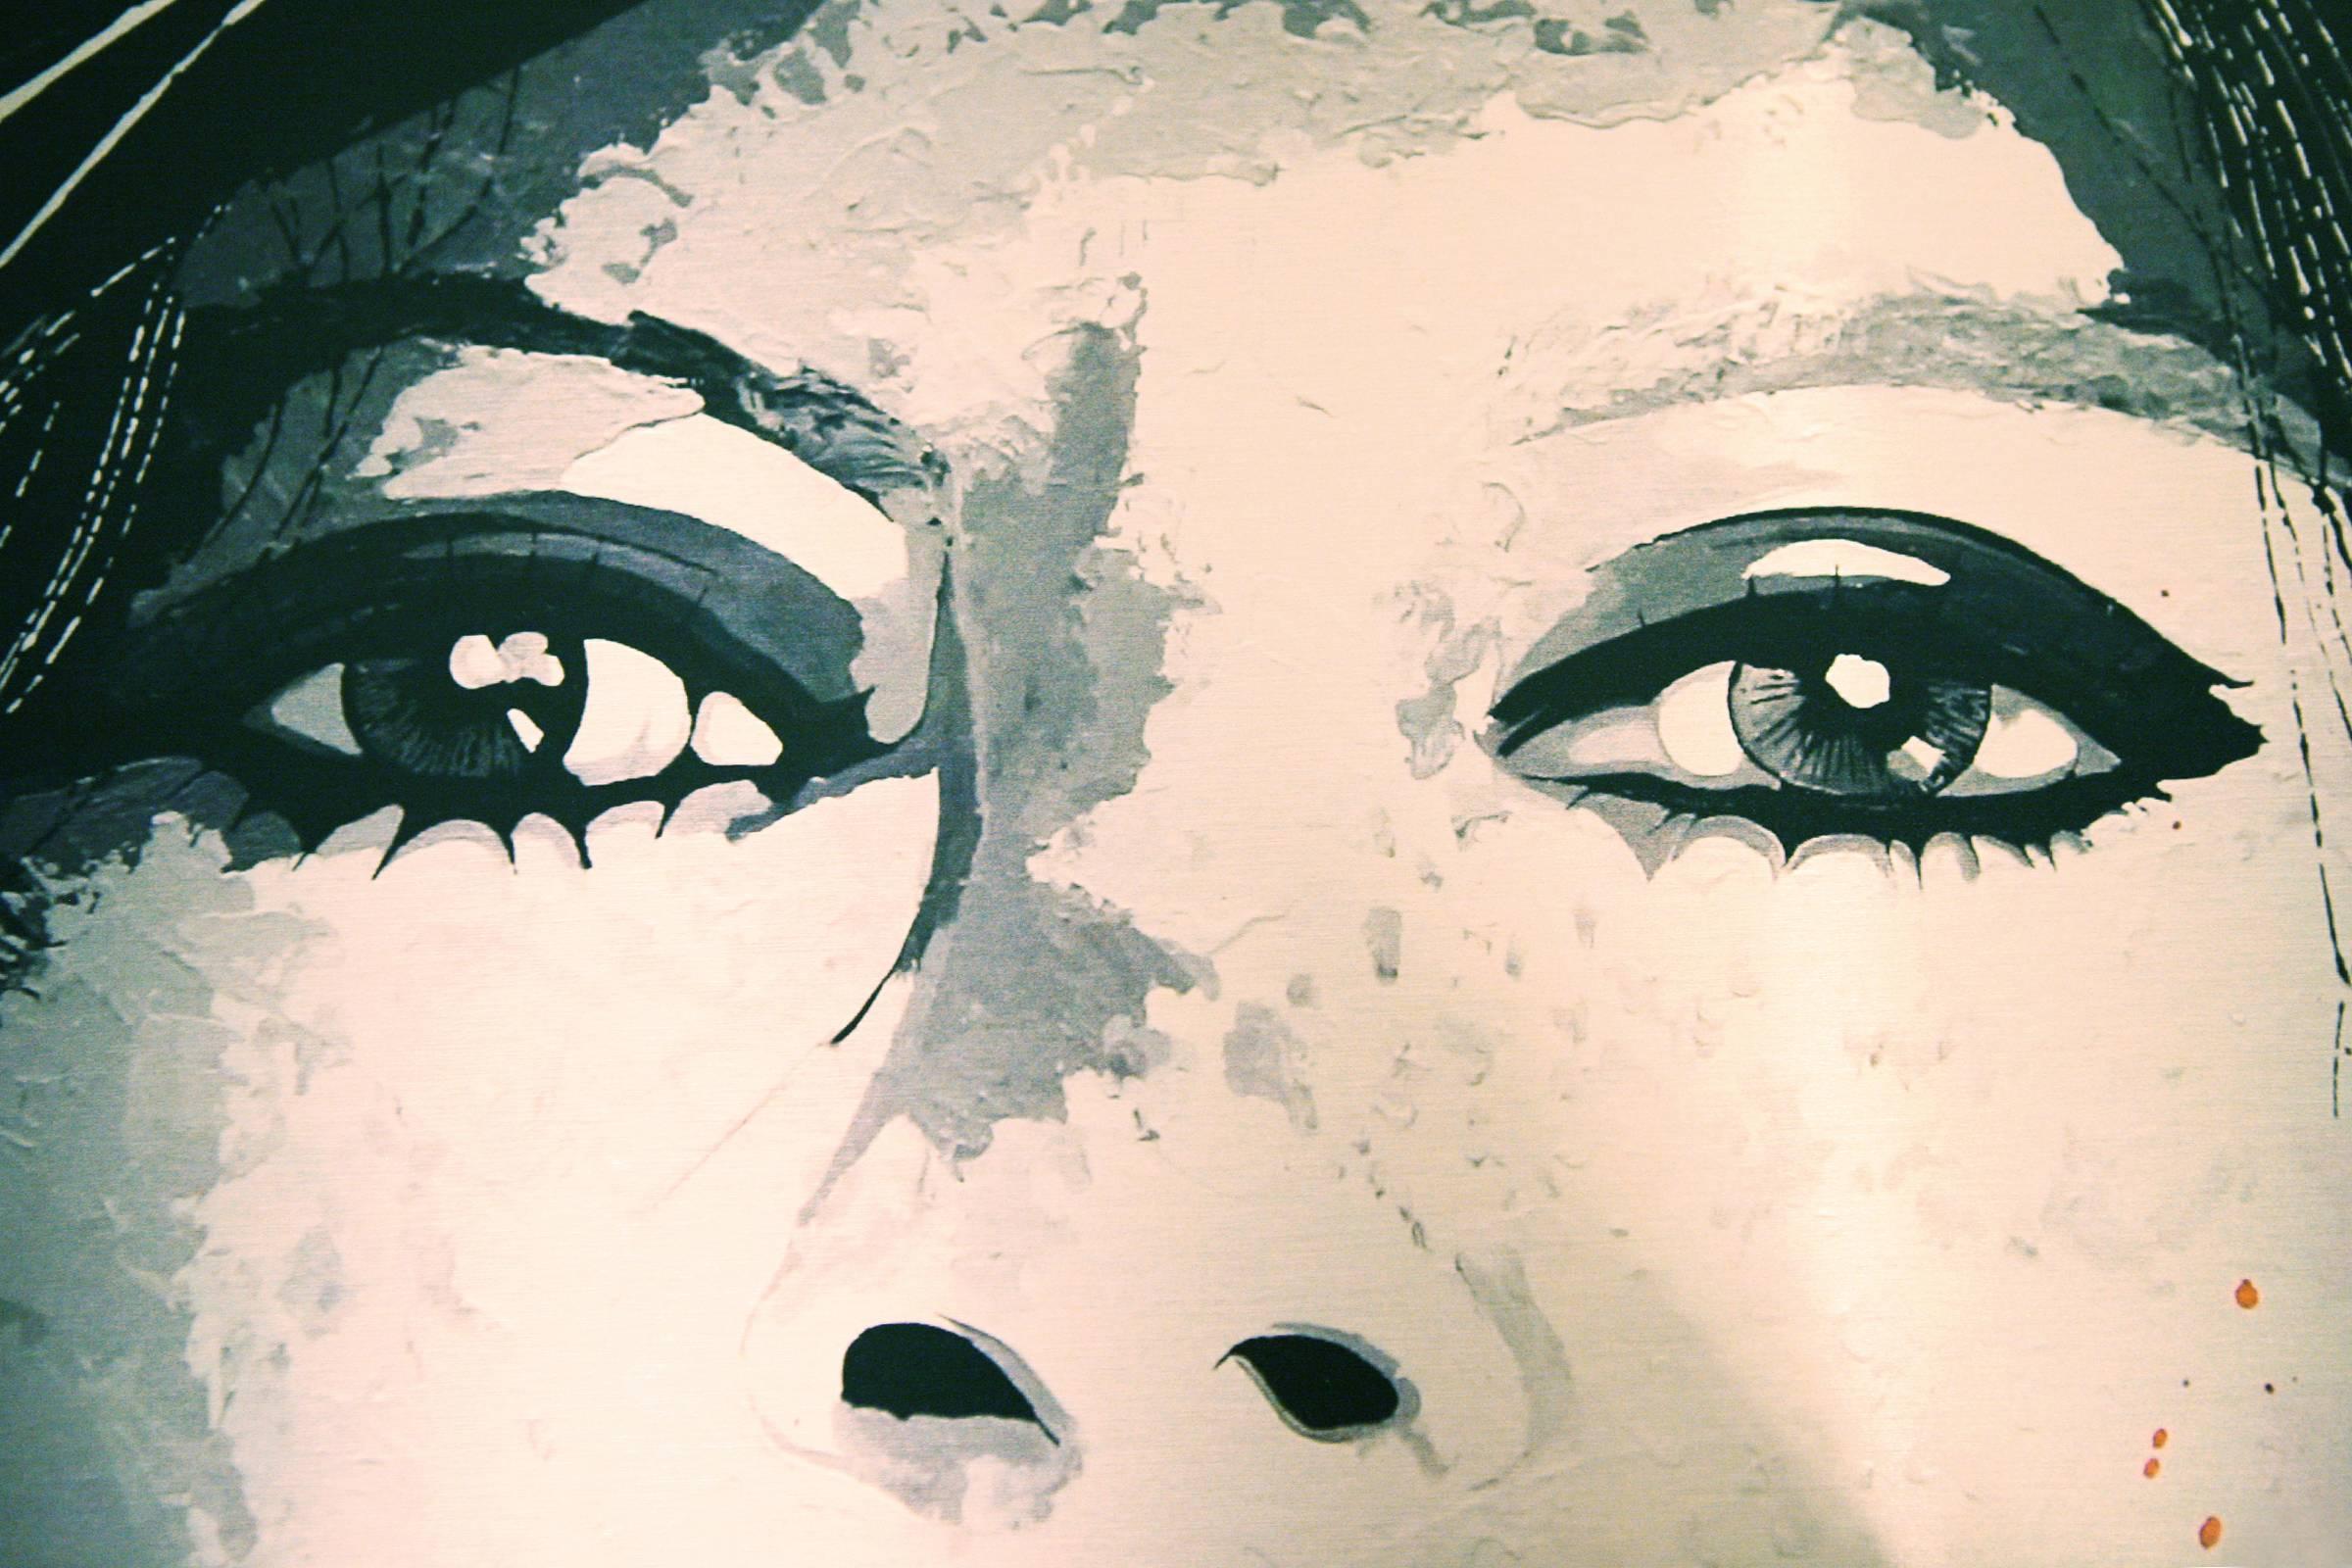 Photographie Brigitte Bardot sur aluminium brossé.
Édition limitée à six exemplaires. Fait par Valery 
Artistics Durand. Livré avec certificat.
 